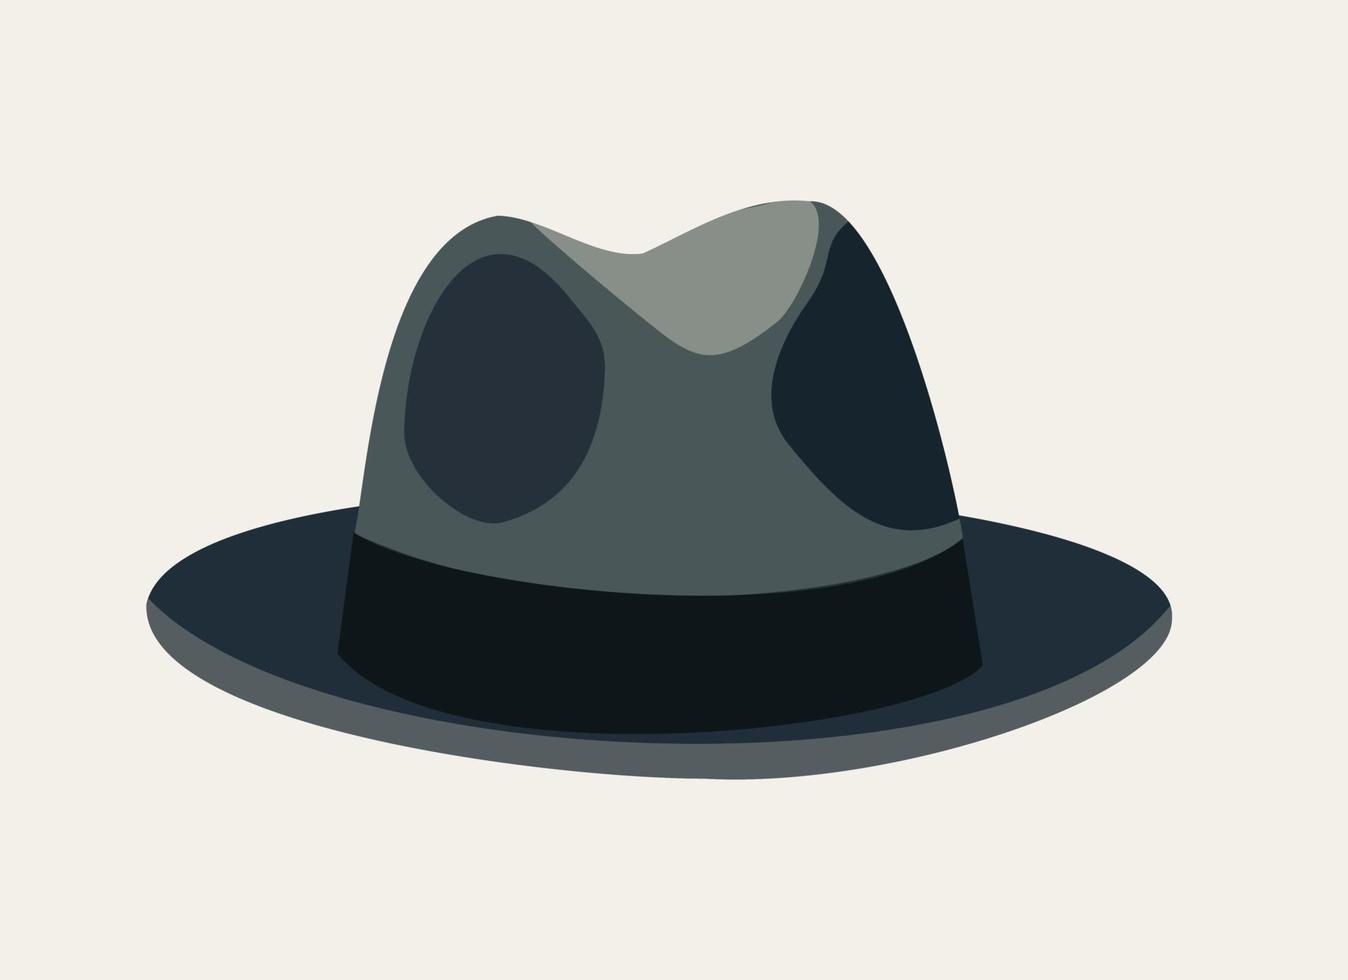 ilustração em vetor isolada de chapéu fedora cinza.